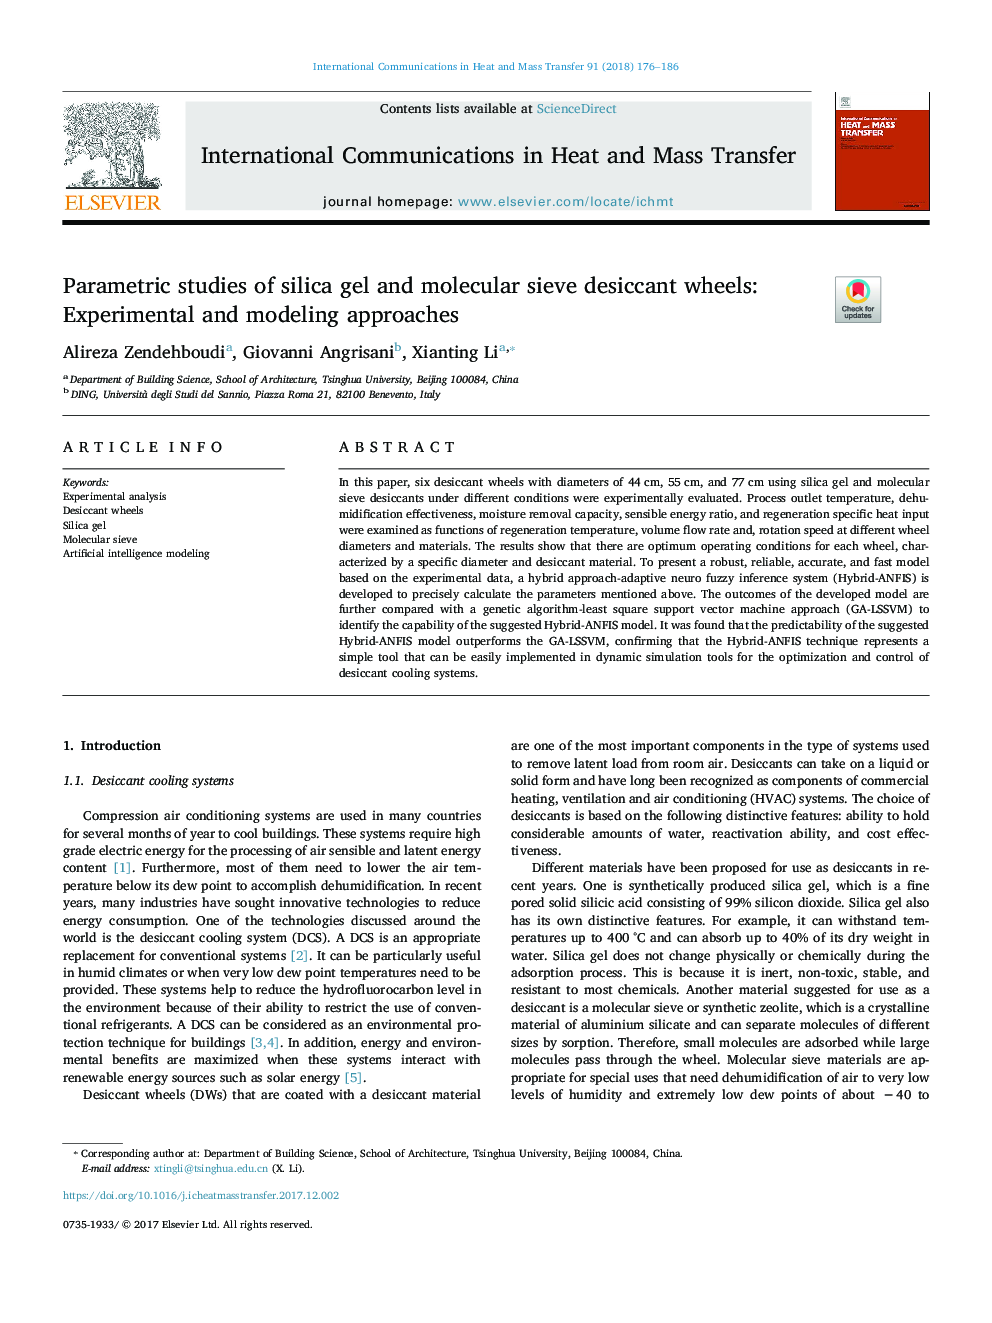 مطالعات پارامتریک از سیلیکاژل و چرخ های غربال مولکولی غربال: روش های تجربی و مدل سازی 